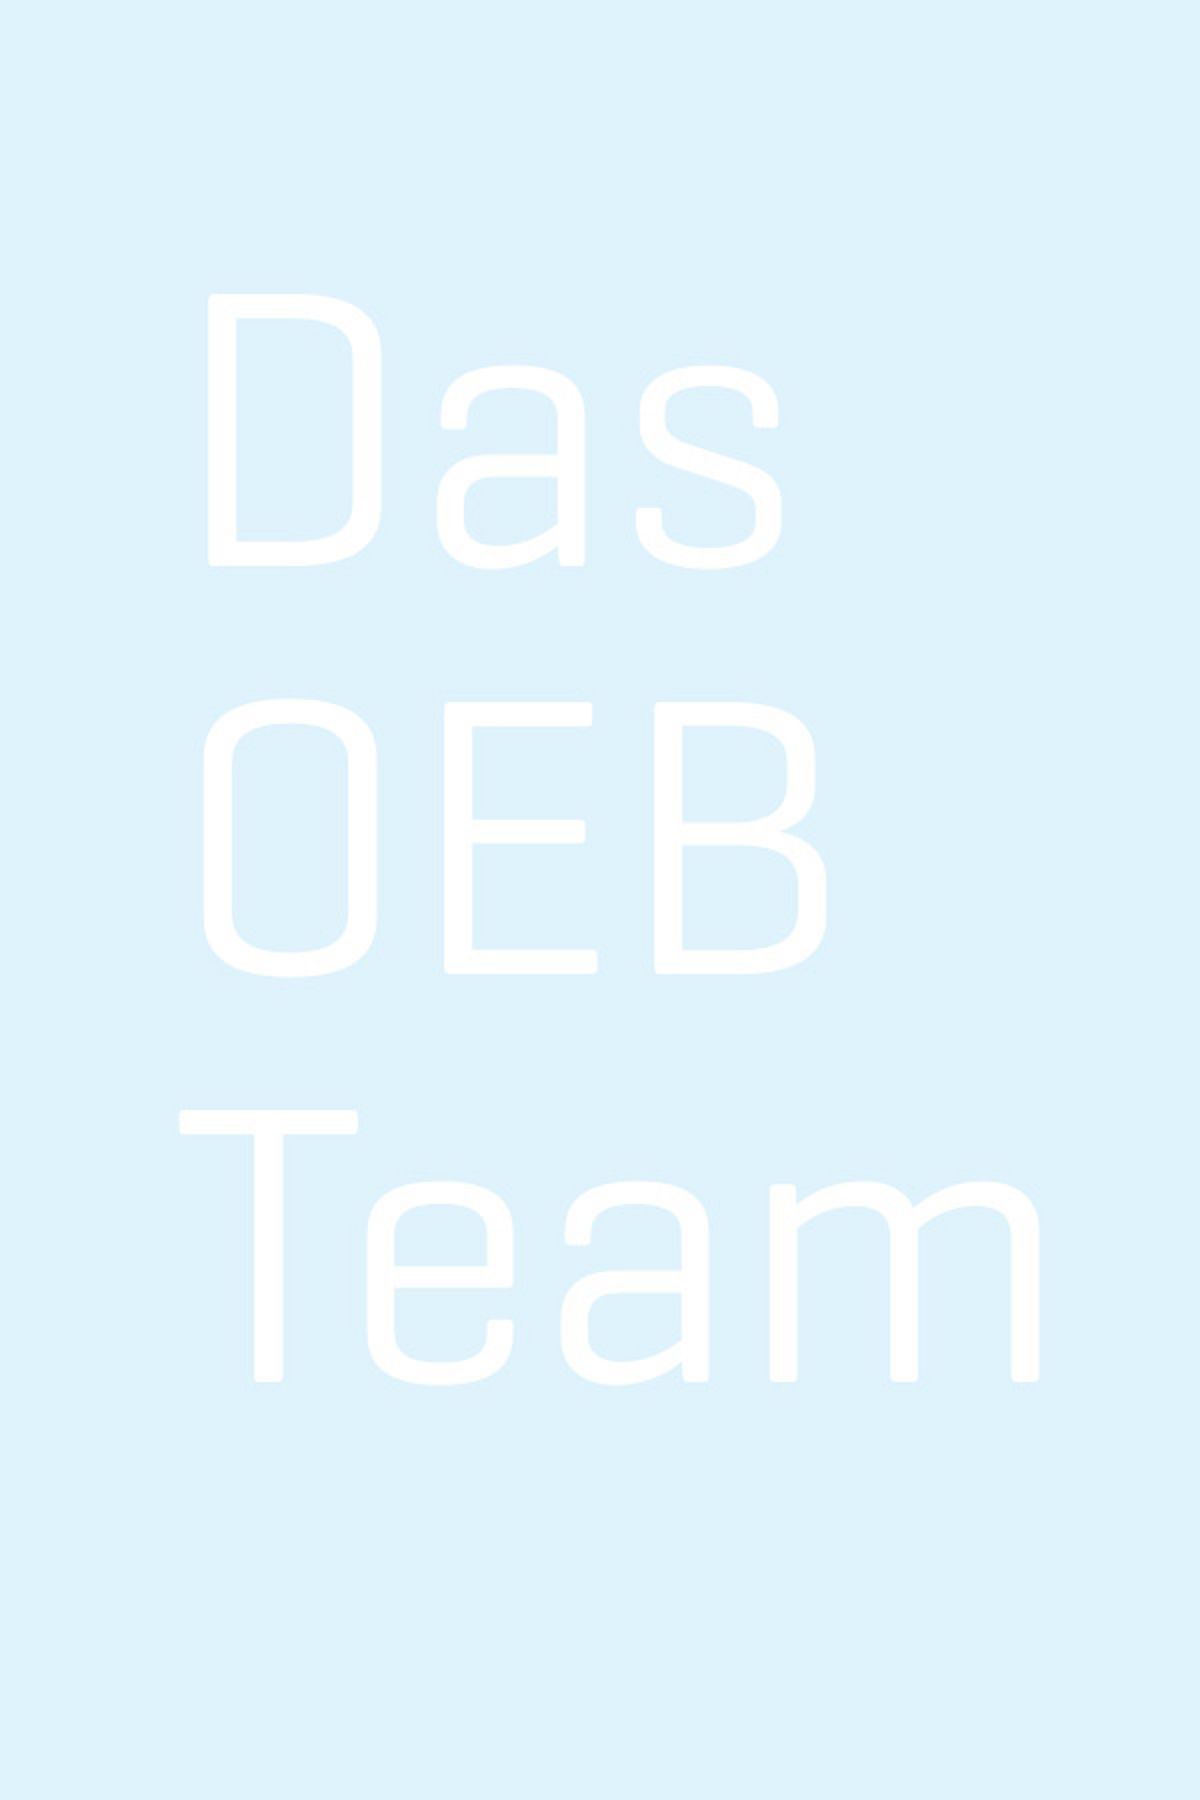 Das OEB-Team